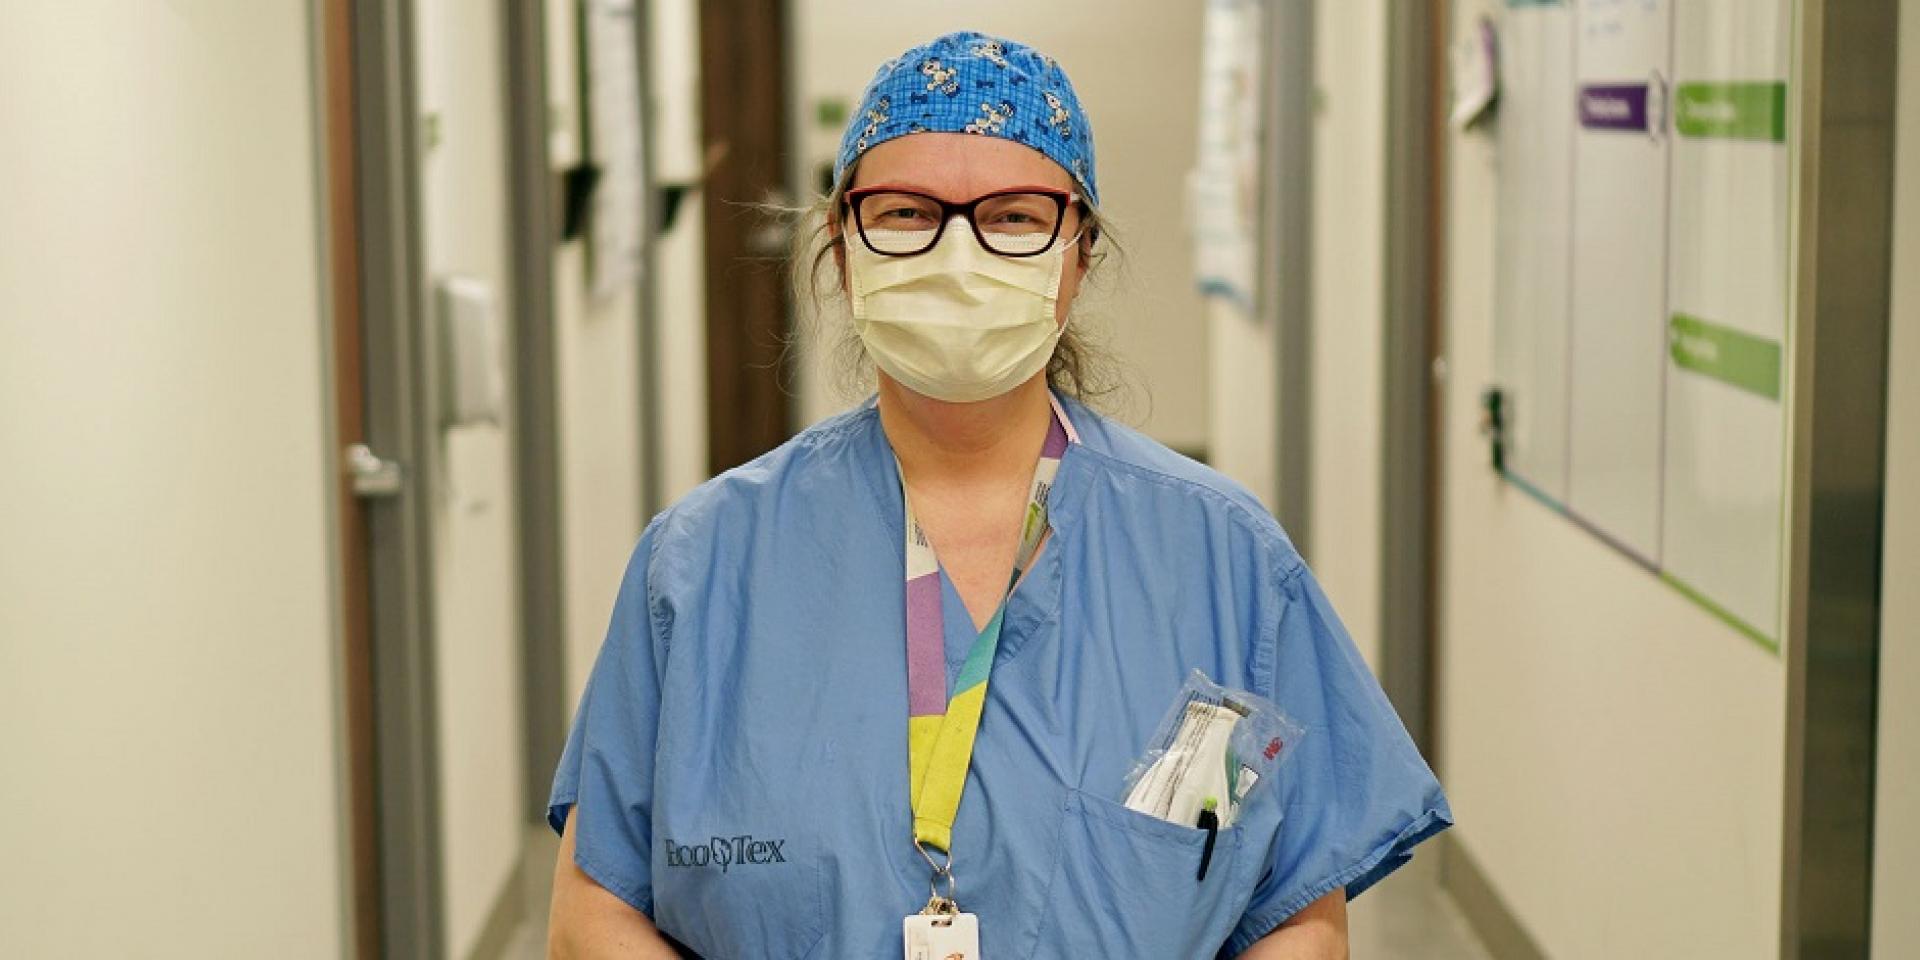 healthcare worker wearing mask standing in hospital corridor